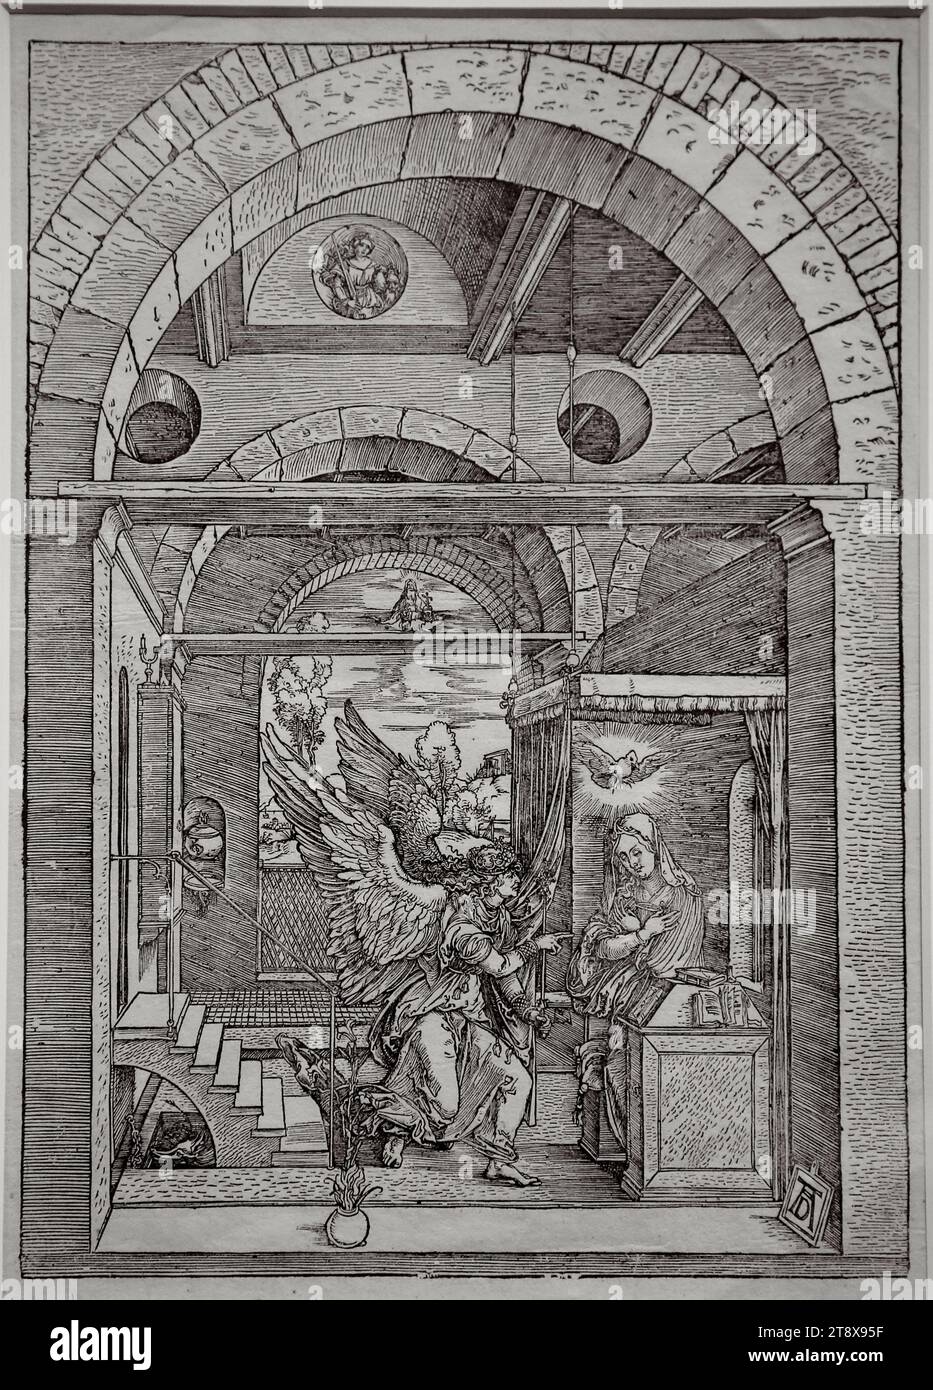 L'Annonciation. Albrecht durer (1471-1528) de la vie de la Vierge. C 1503. Gravure sur bois. Gravure imprimée. Nuremberg, Allemagne. Banque D'Images